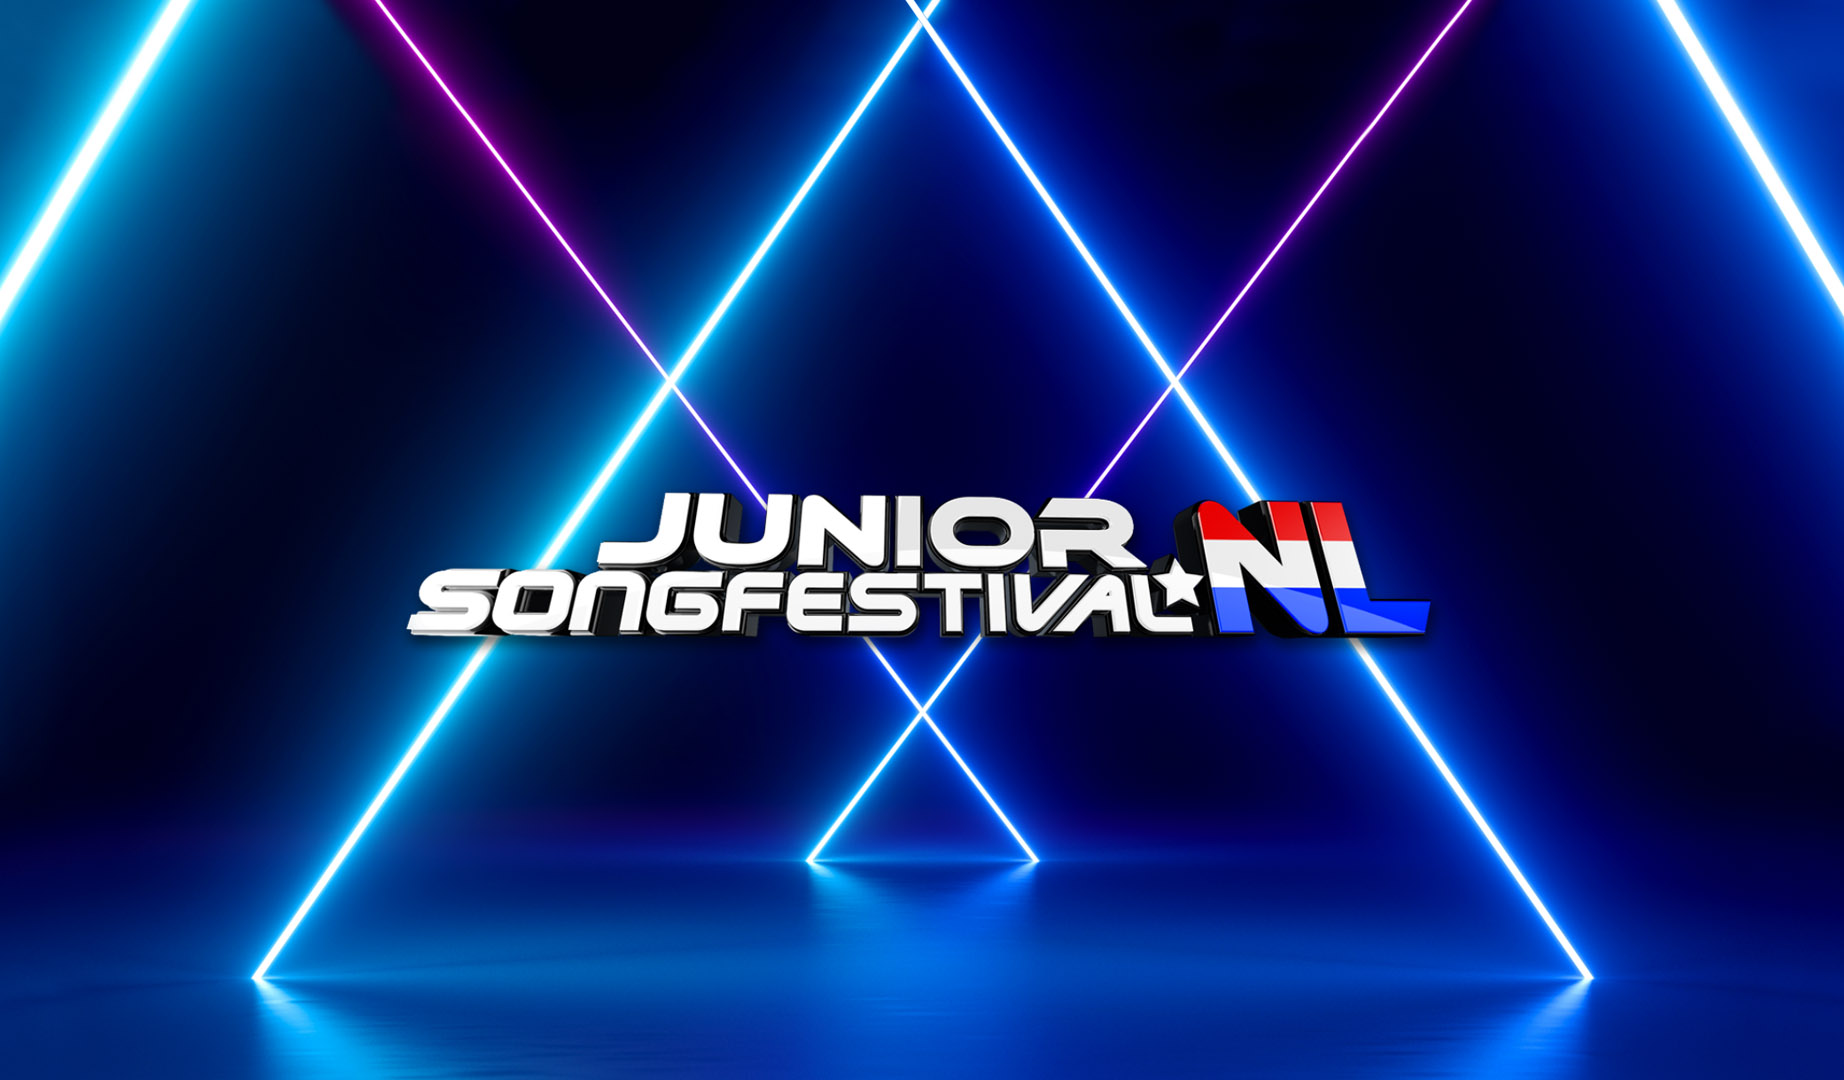 Países Bajos: Anunciados los grupos que formarán el Junior Songfestival 2021